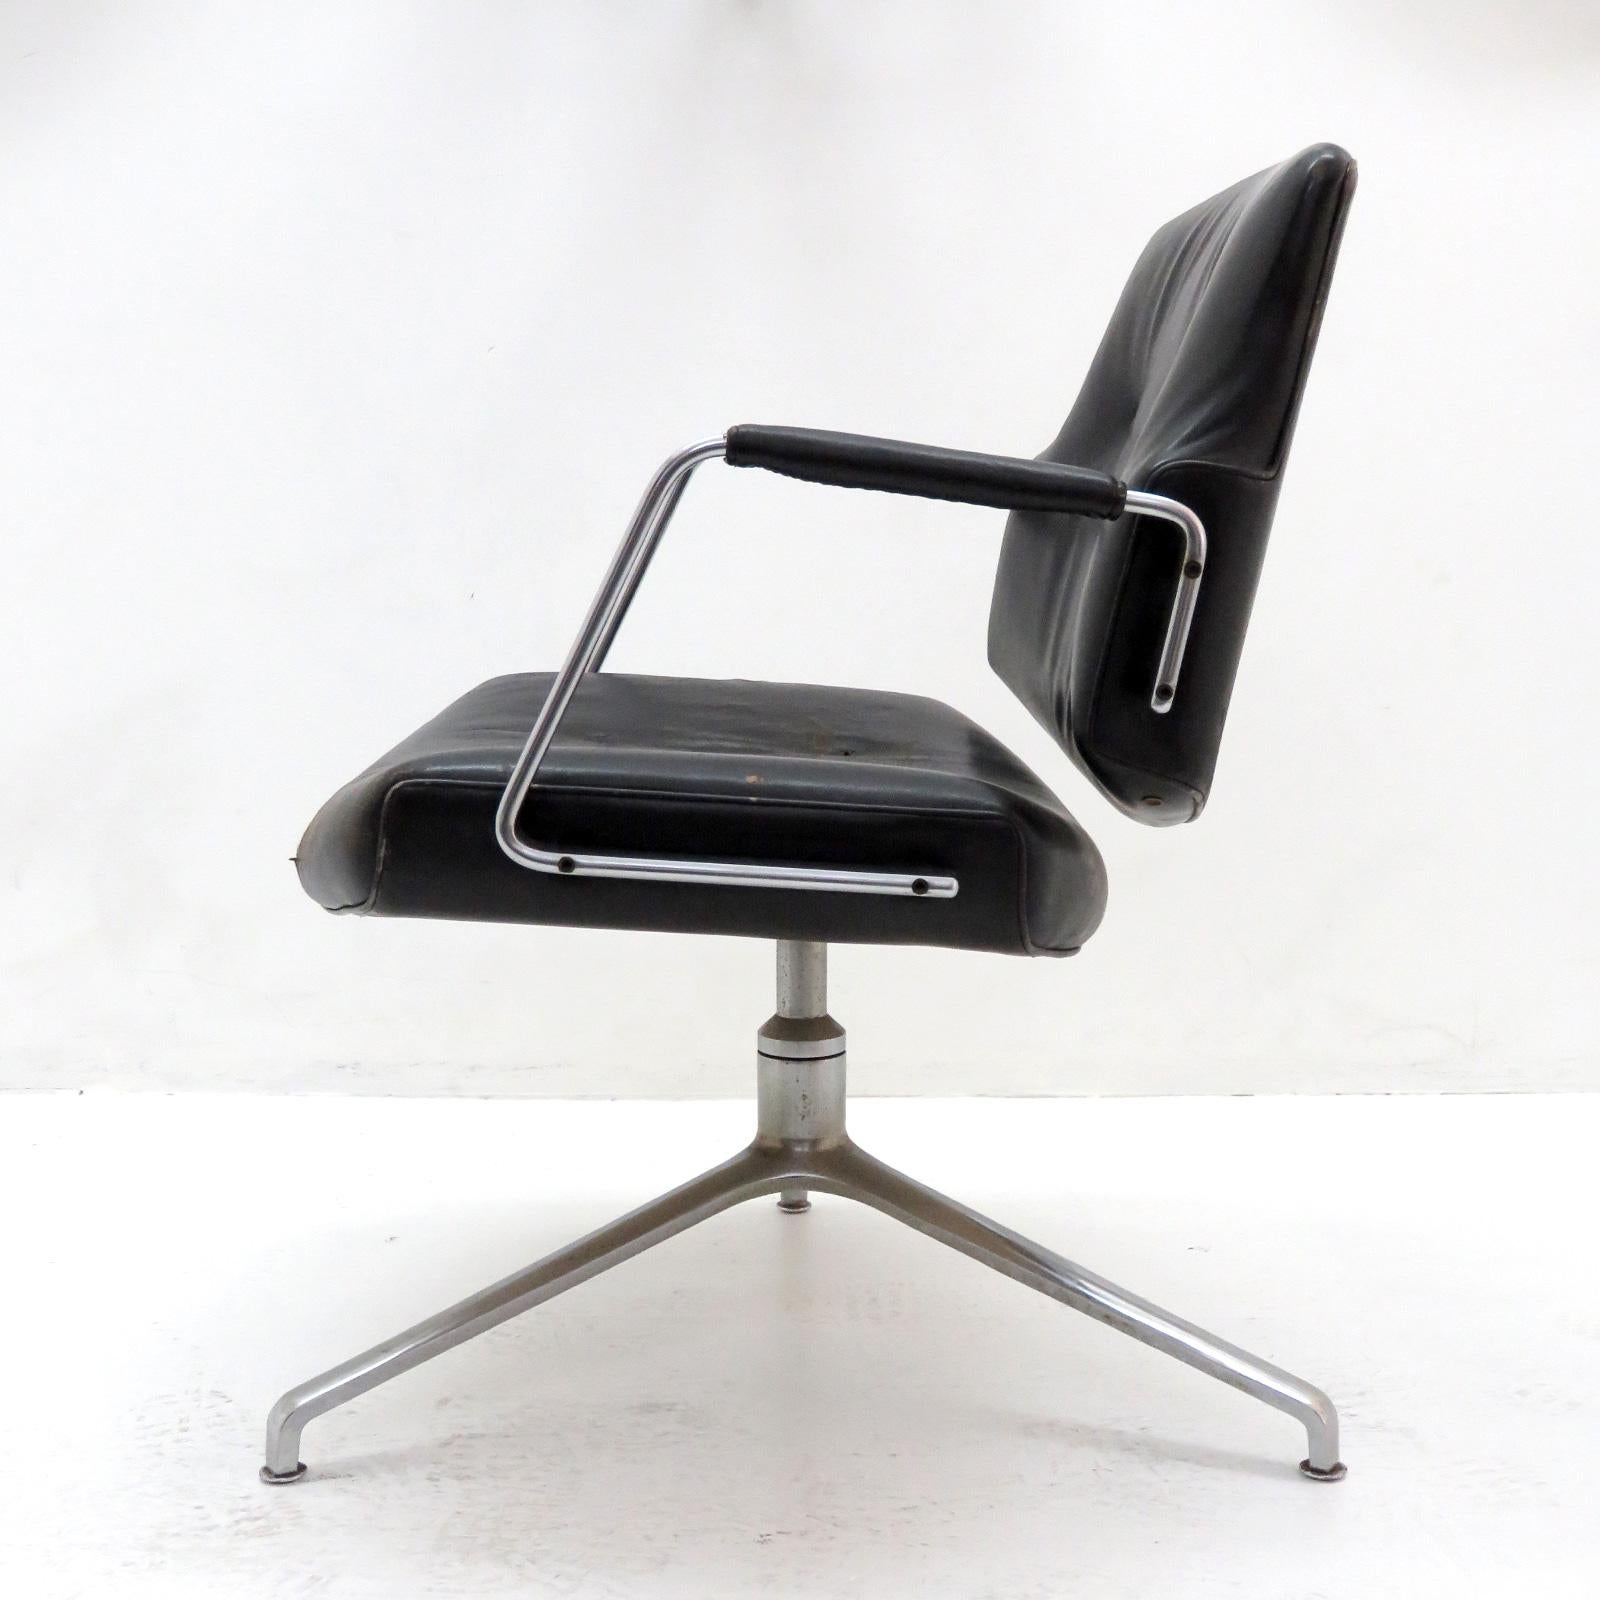 Atemberaubender Bürostuhl Modell FK84 von Preben Fabricius & Jørgen Kastholm für Kill International, 1962, frühe Produktion mit freischwingender Rückenlehne, in schwarzem Leder auf einem verchromten Dreifuß, markiert, drei Stühle vorhanden.